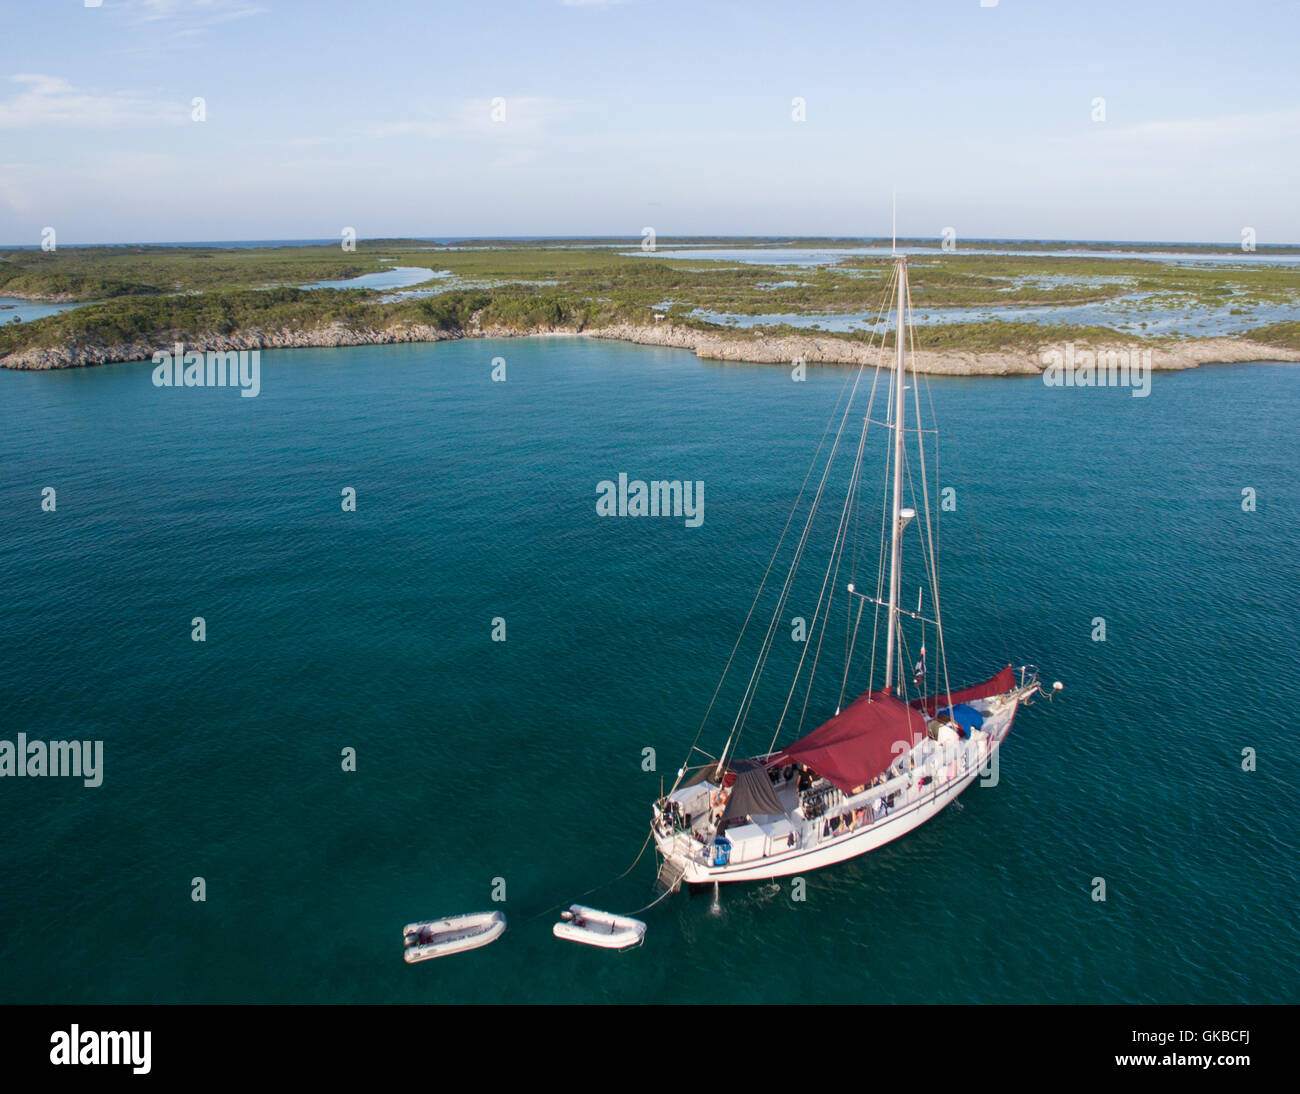 Aerial of a sailboat off the coast of Shroud Cay, Exuma Cays, Bahamas Islands Stock Photo